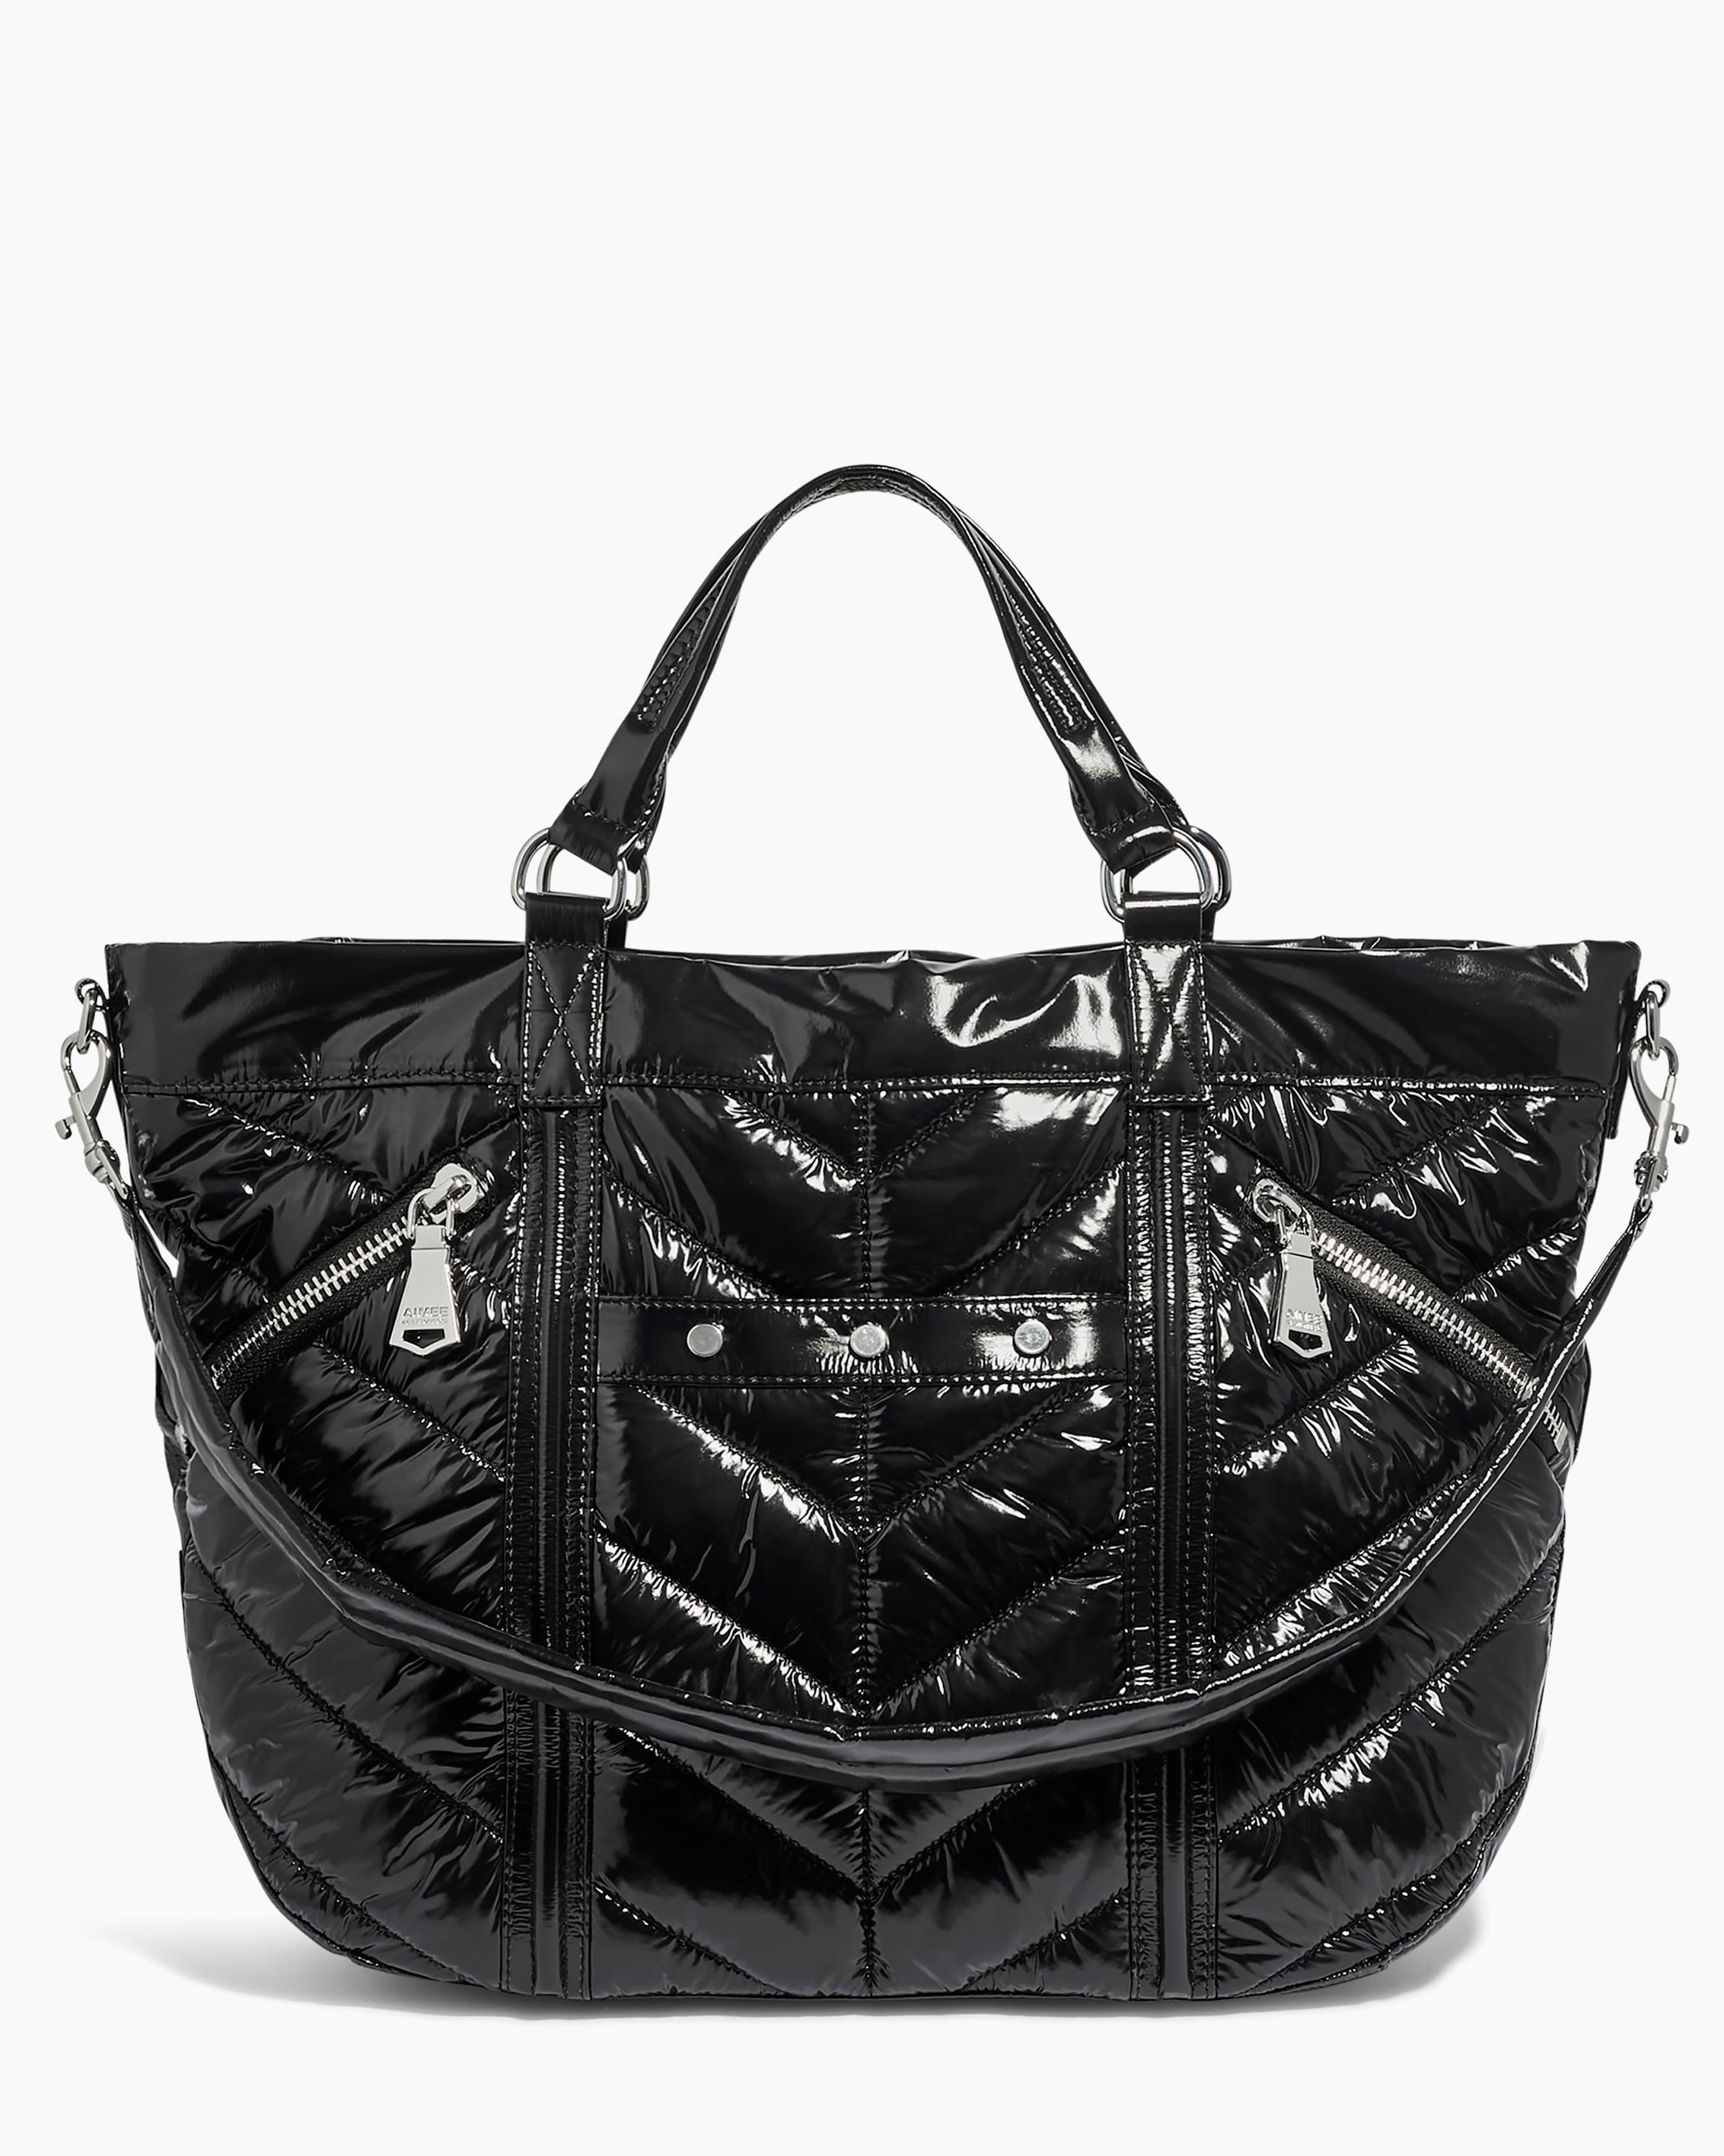 Women's Bags - Crossbody, Handbags, Purses & More